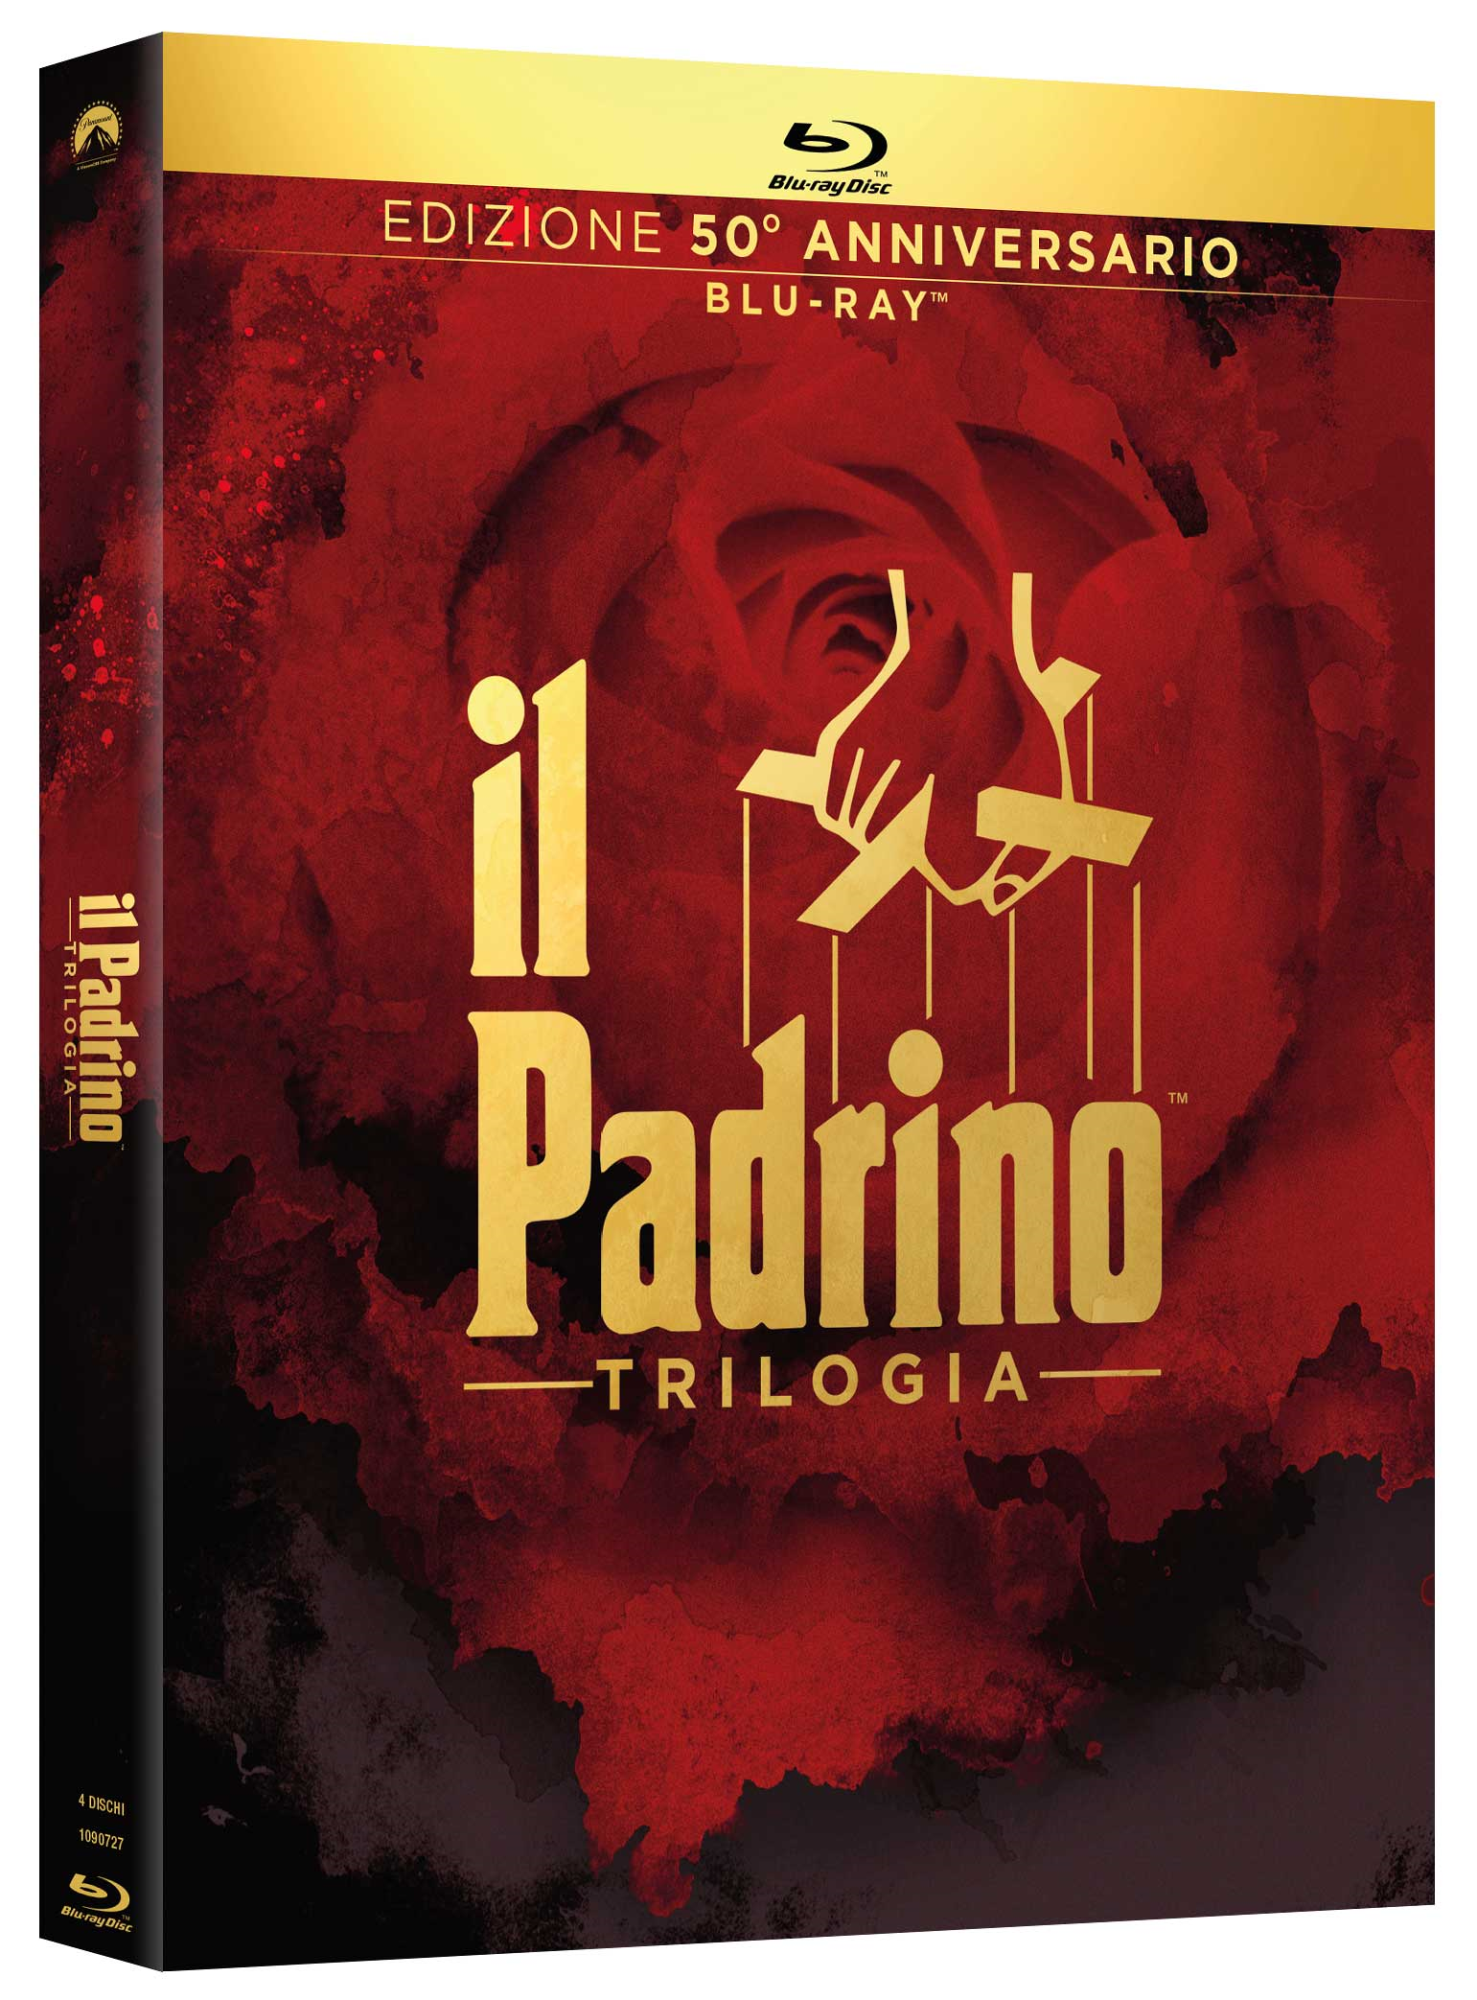 Blu-Ray Padrino (Il) - La Trilogia (Edizione 50o Anniversario) (4 Blu-Ray) NUOVO SIGILLATO, EDIZIONE DEL 17/05/2022 SUBITO DISPONIBILE